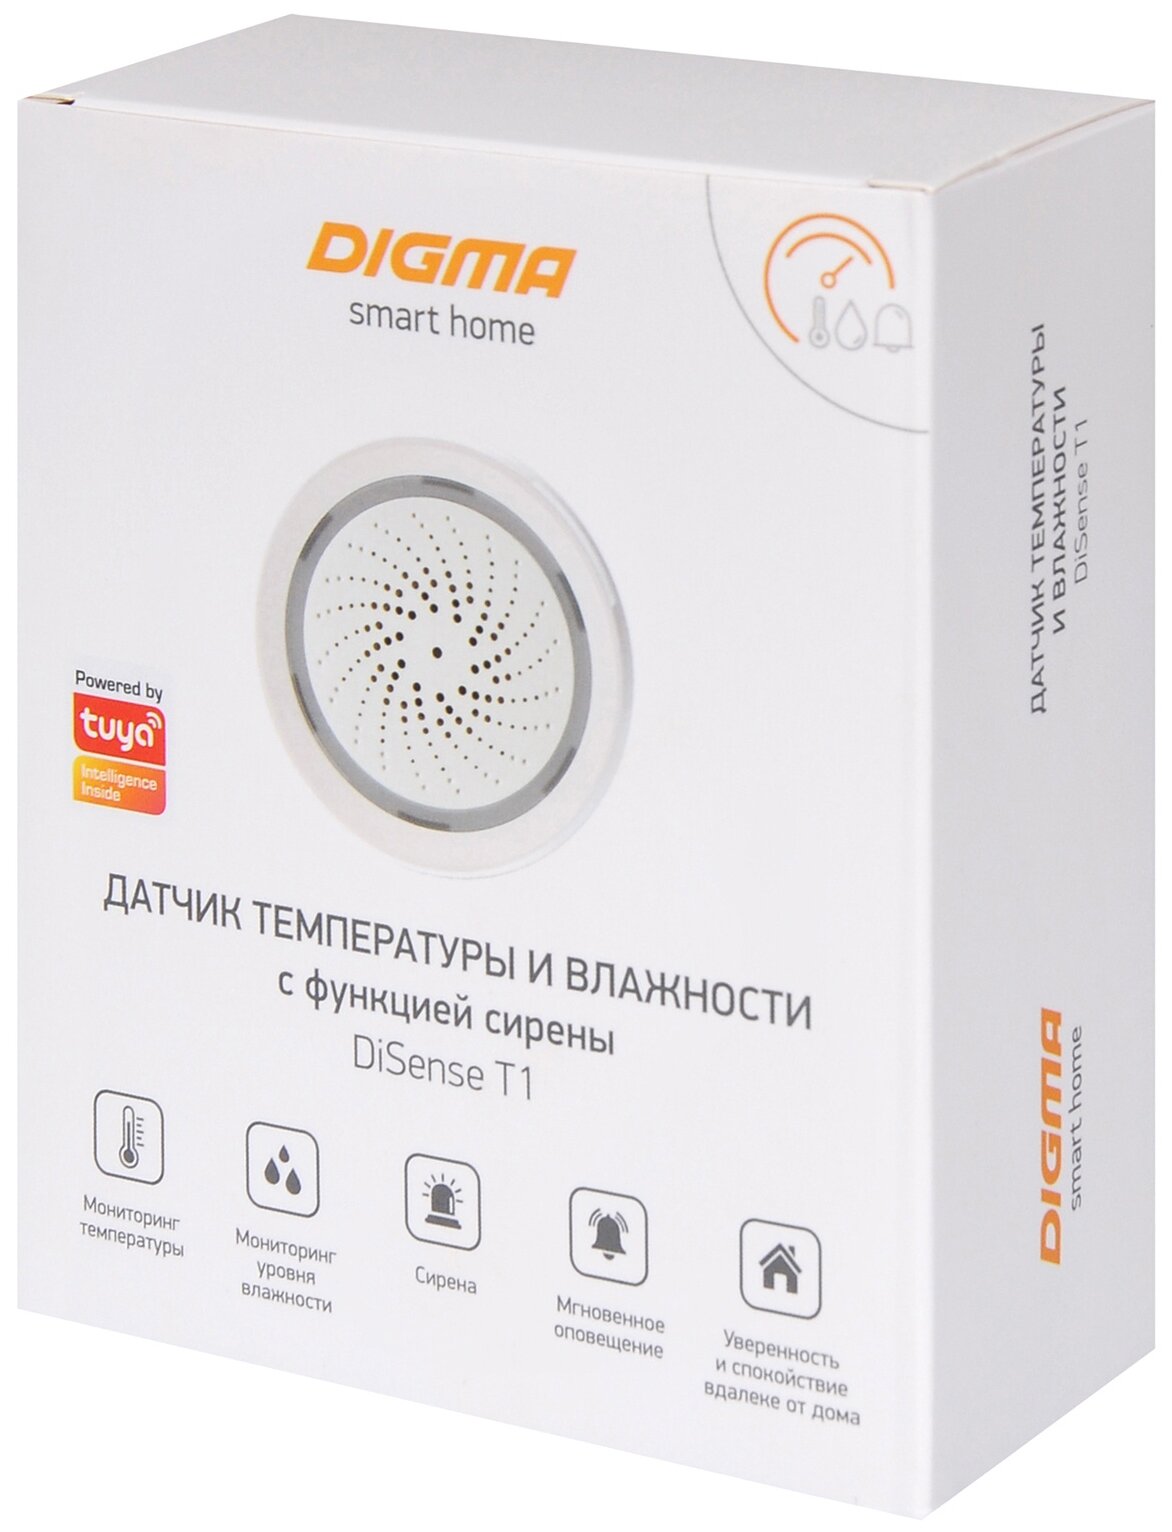 Комнатный датчик температуры и влажности DIGMA DiSense Т1